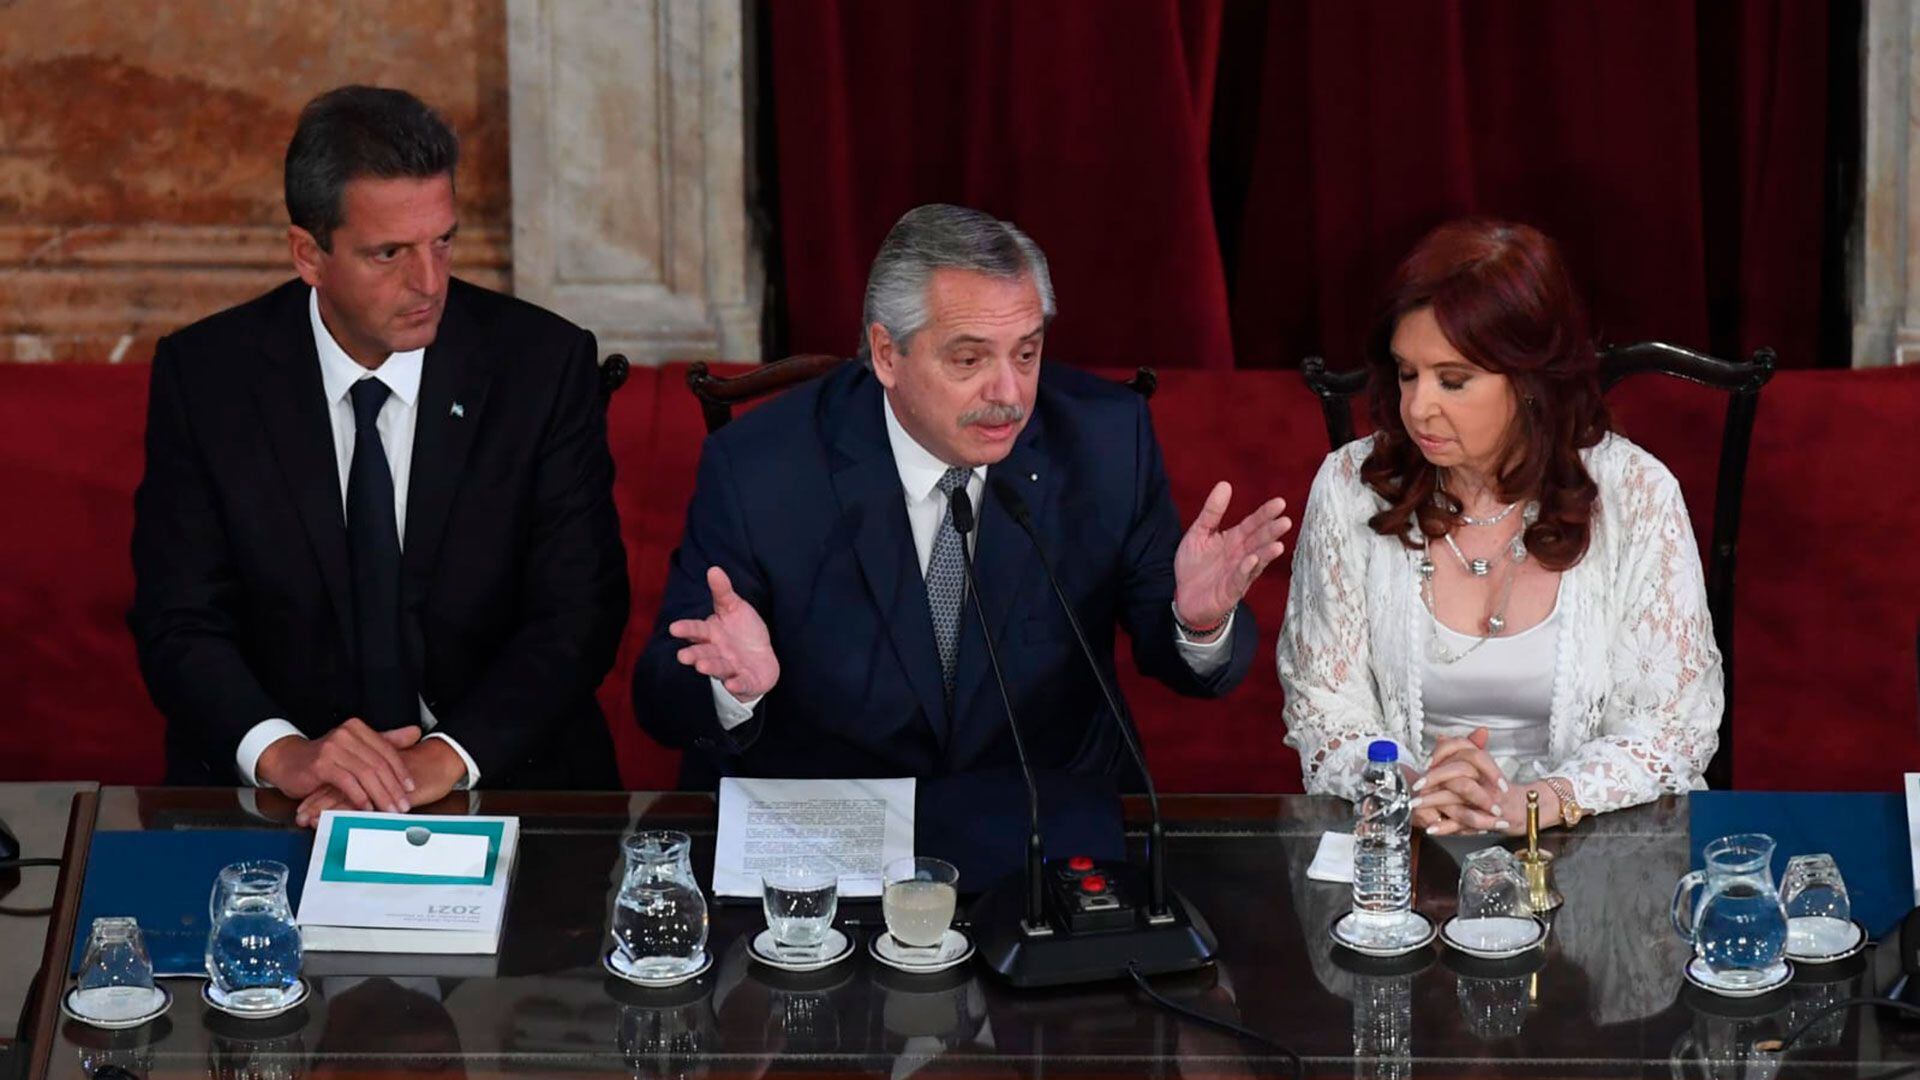 Alberto Fernández inaugura las Sesiones Ordinarias en el Congreso